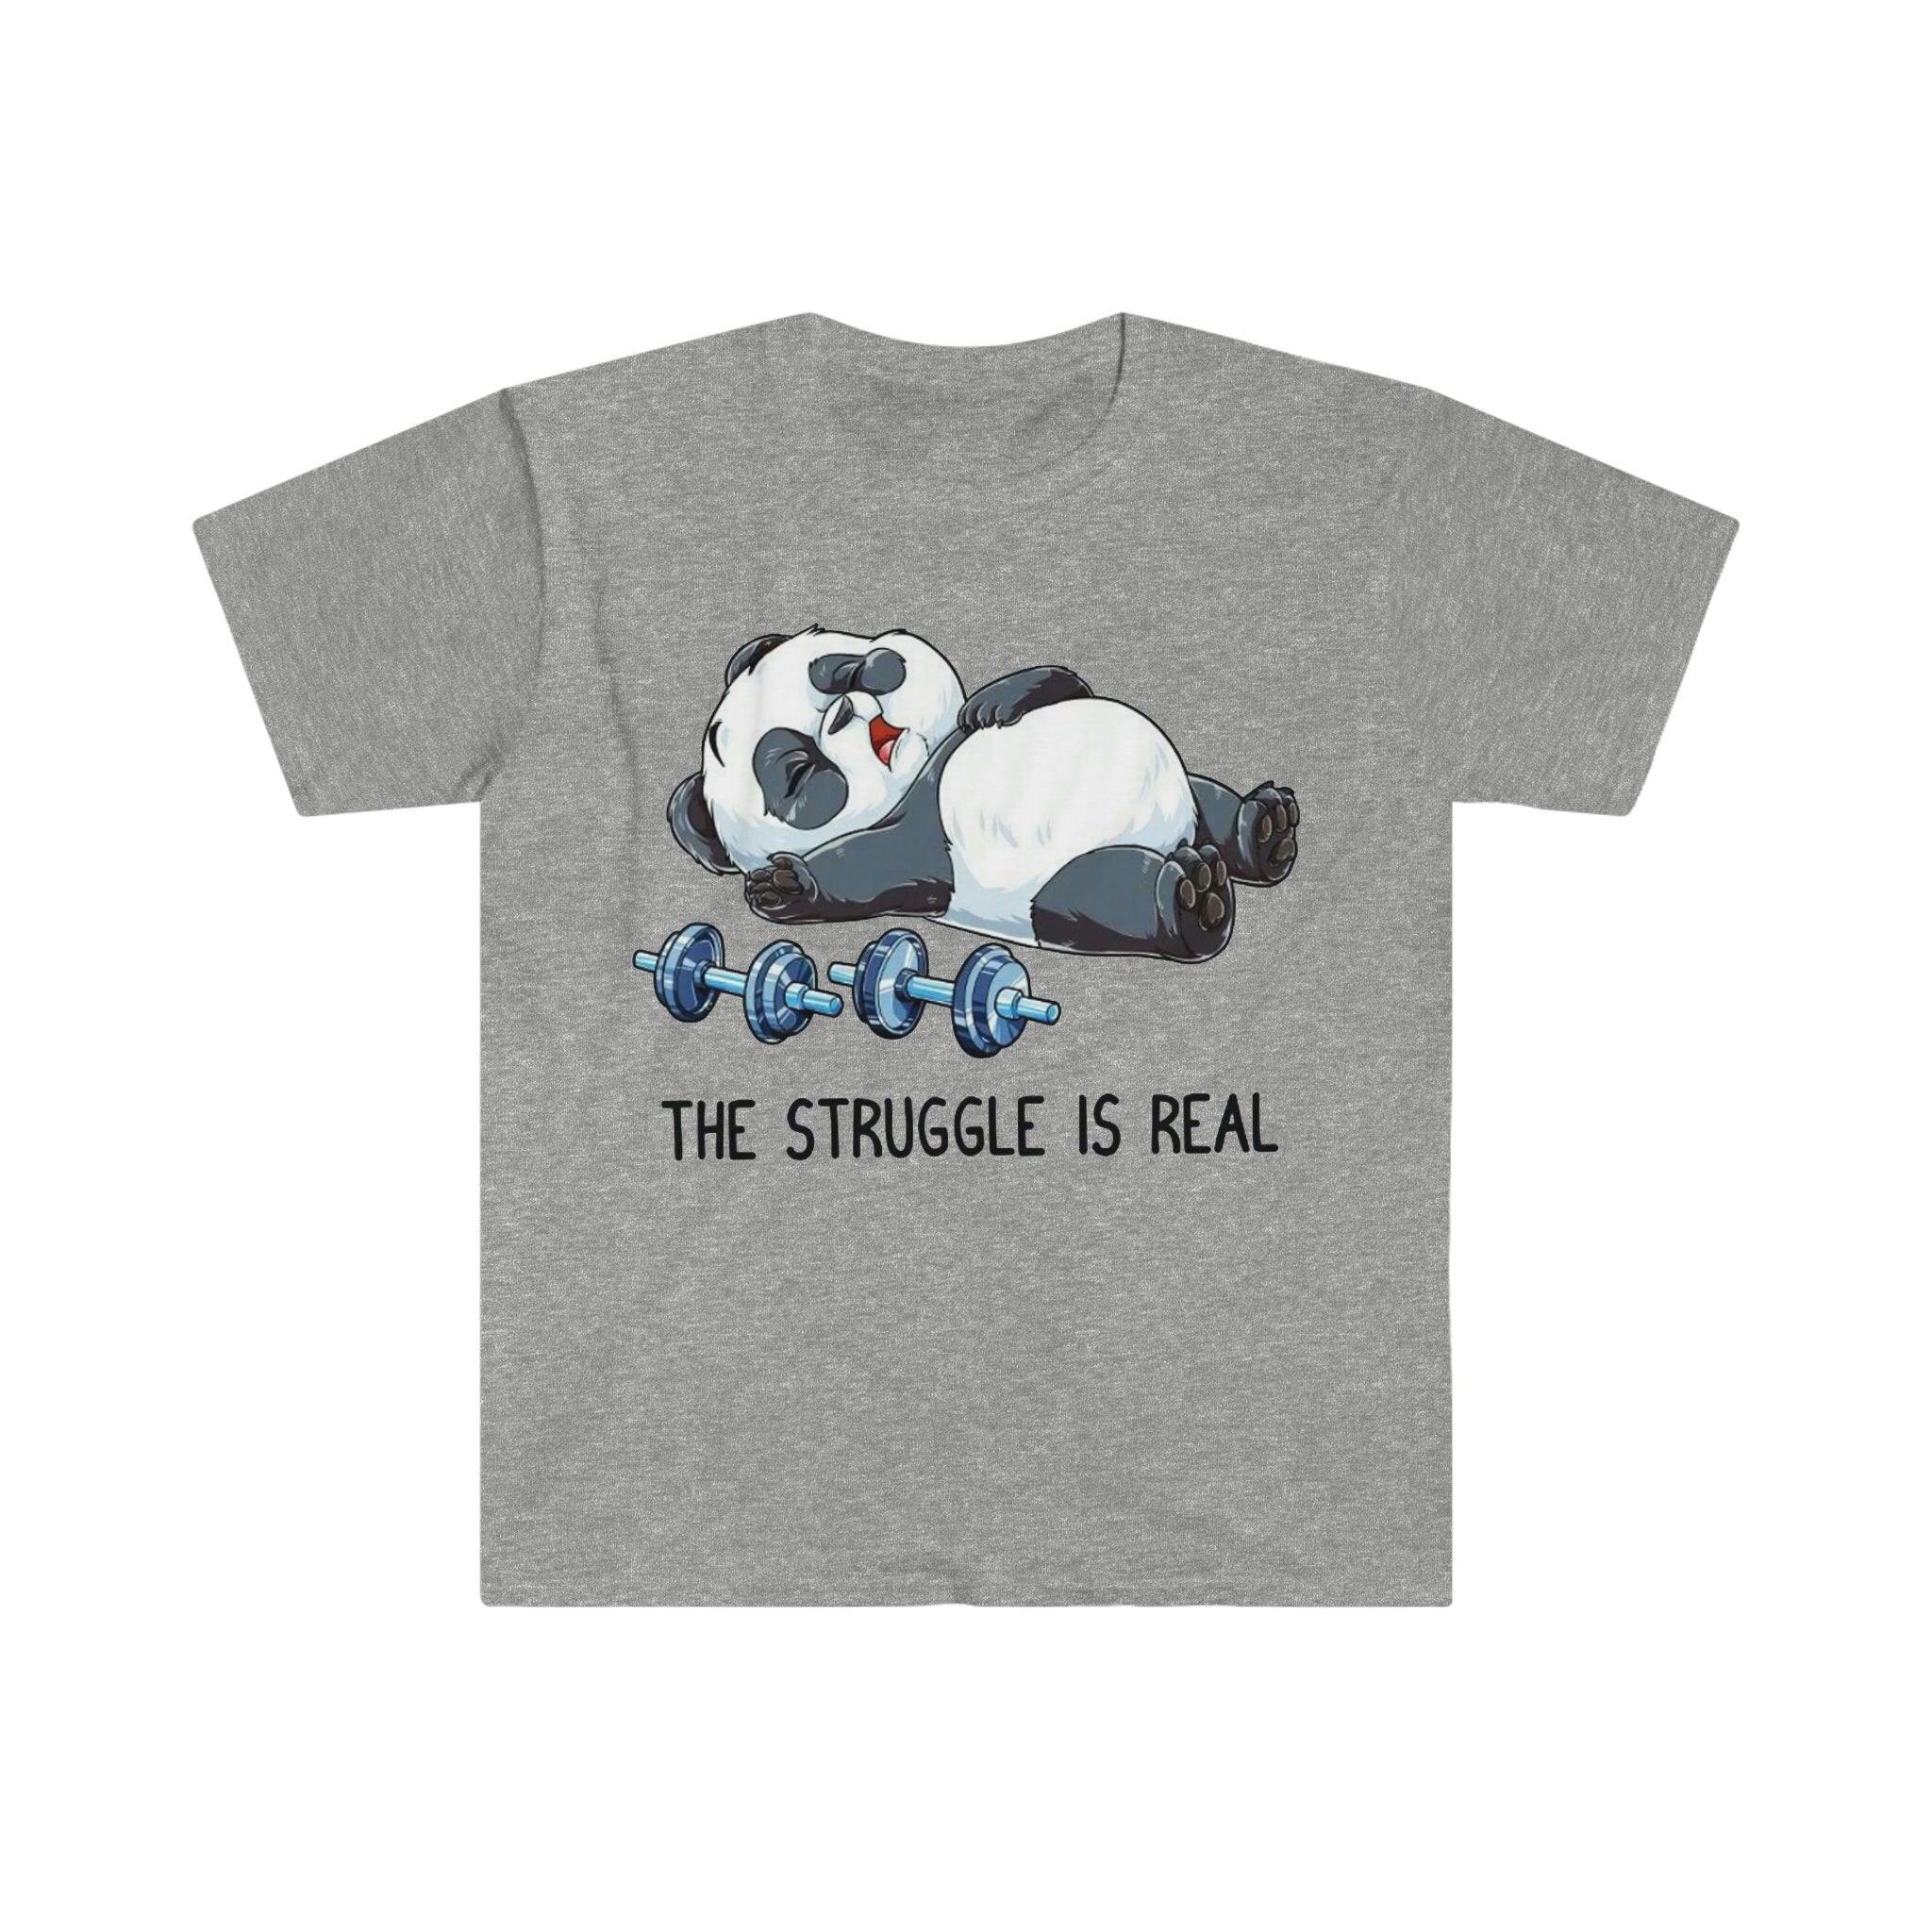 The Struggle Is Real Panda Футболки для тяжелой атлетики, Забавная футболка для фитнес-зала для тяжелой атлетики, Рубашка для тренировок, Рубашка для фитнеса Вес в режиме зверя, Забавный фитнес, Тренажерный зал, Рубашка для фитнеса, Забавный саркастичный тренажерный зал, Забавная футболка, футболка для упражнений в тренажерном зале, панда борьба, борьба реальна, Футболка, футболки, Тяжелая атлетика, панда для тяжелой атлетики, футболка для тяжелой атлетики, Рубашка для тренировок - plusminusco.com